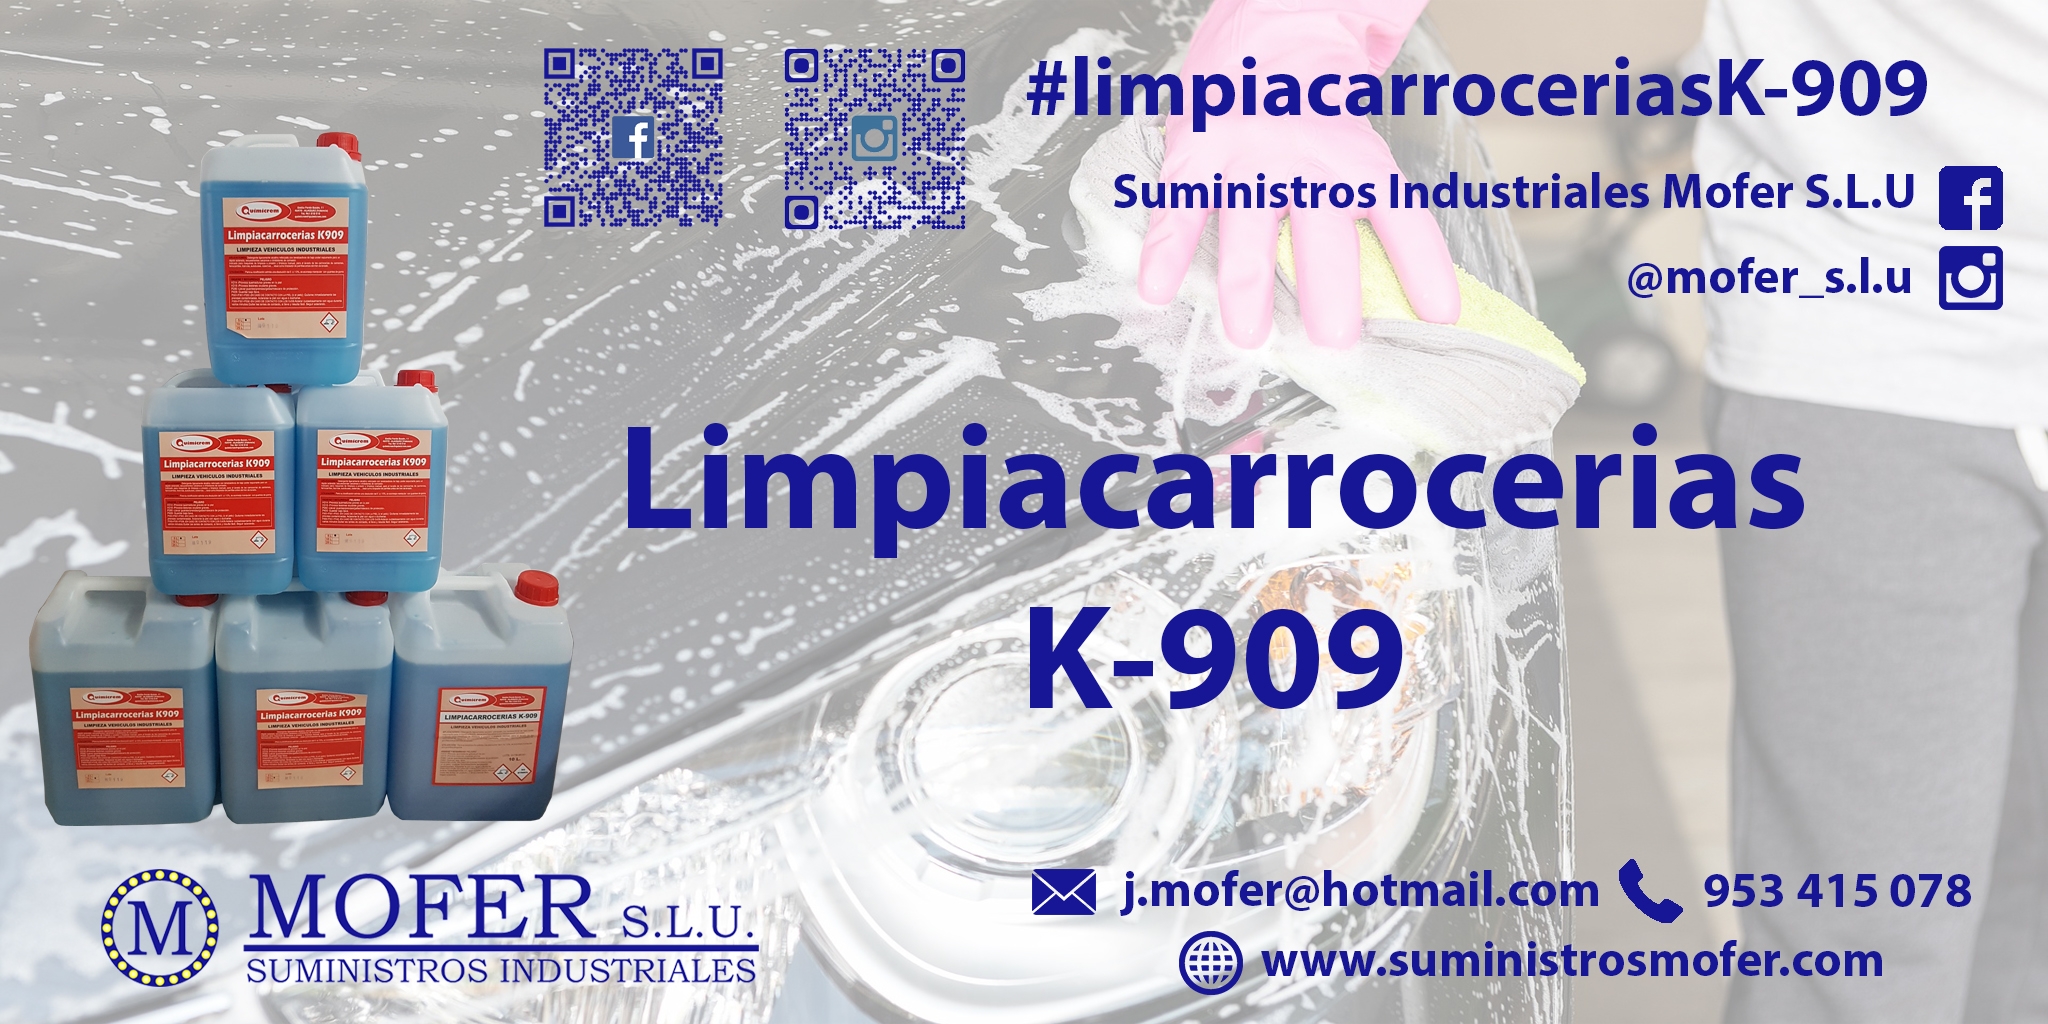 Limpiacarrocerias K-909